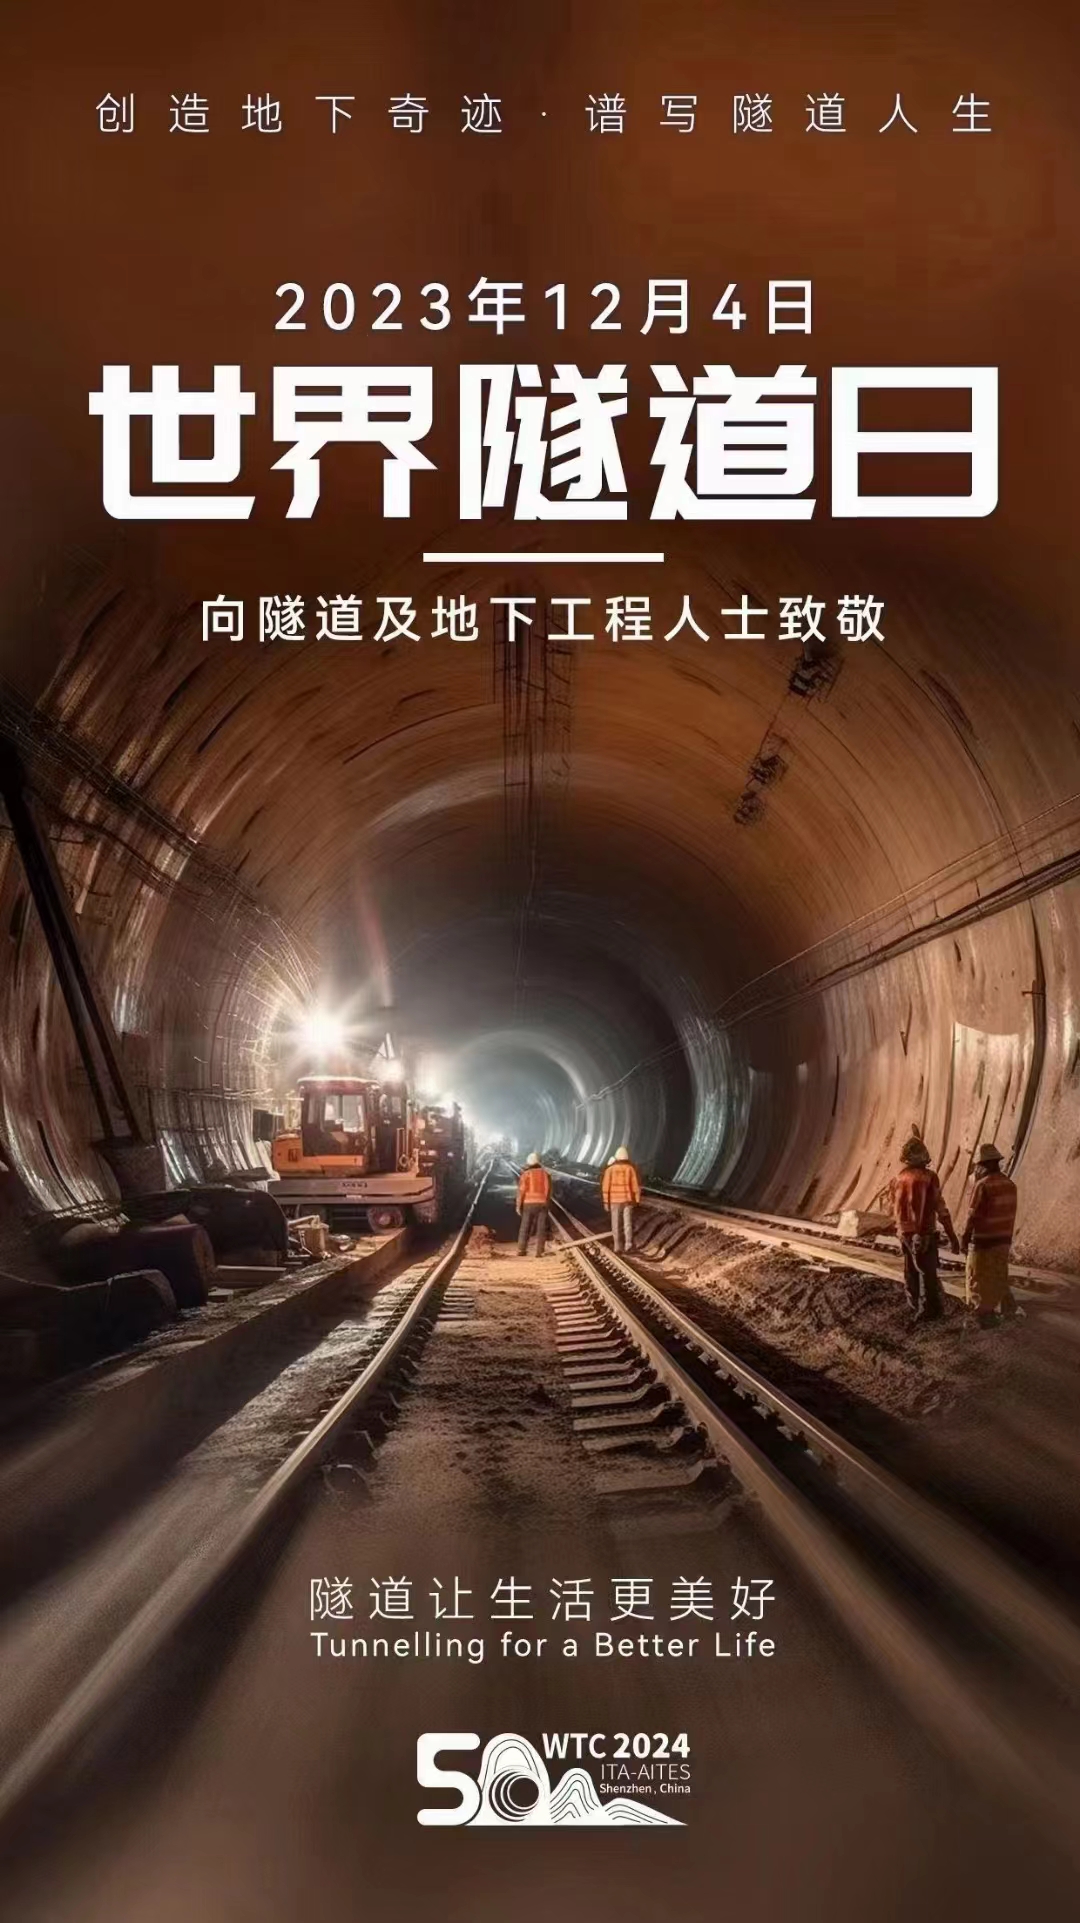 2023年12月4日世界隧道日——向隧道及地下工程人士致敬